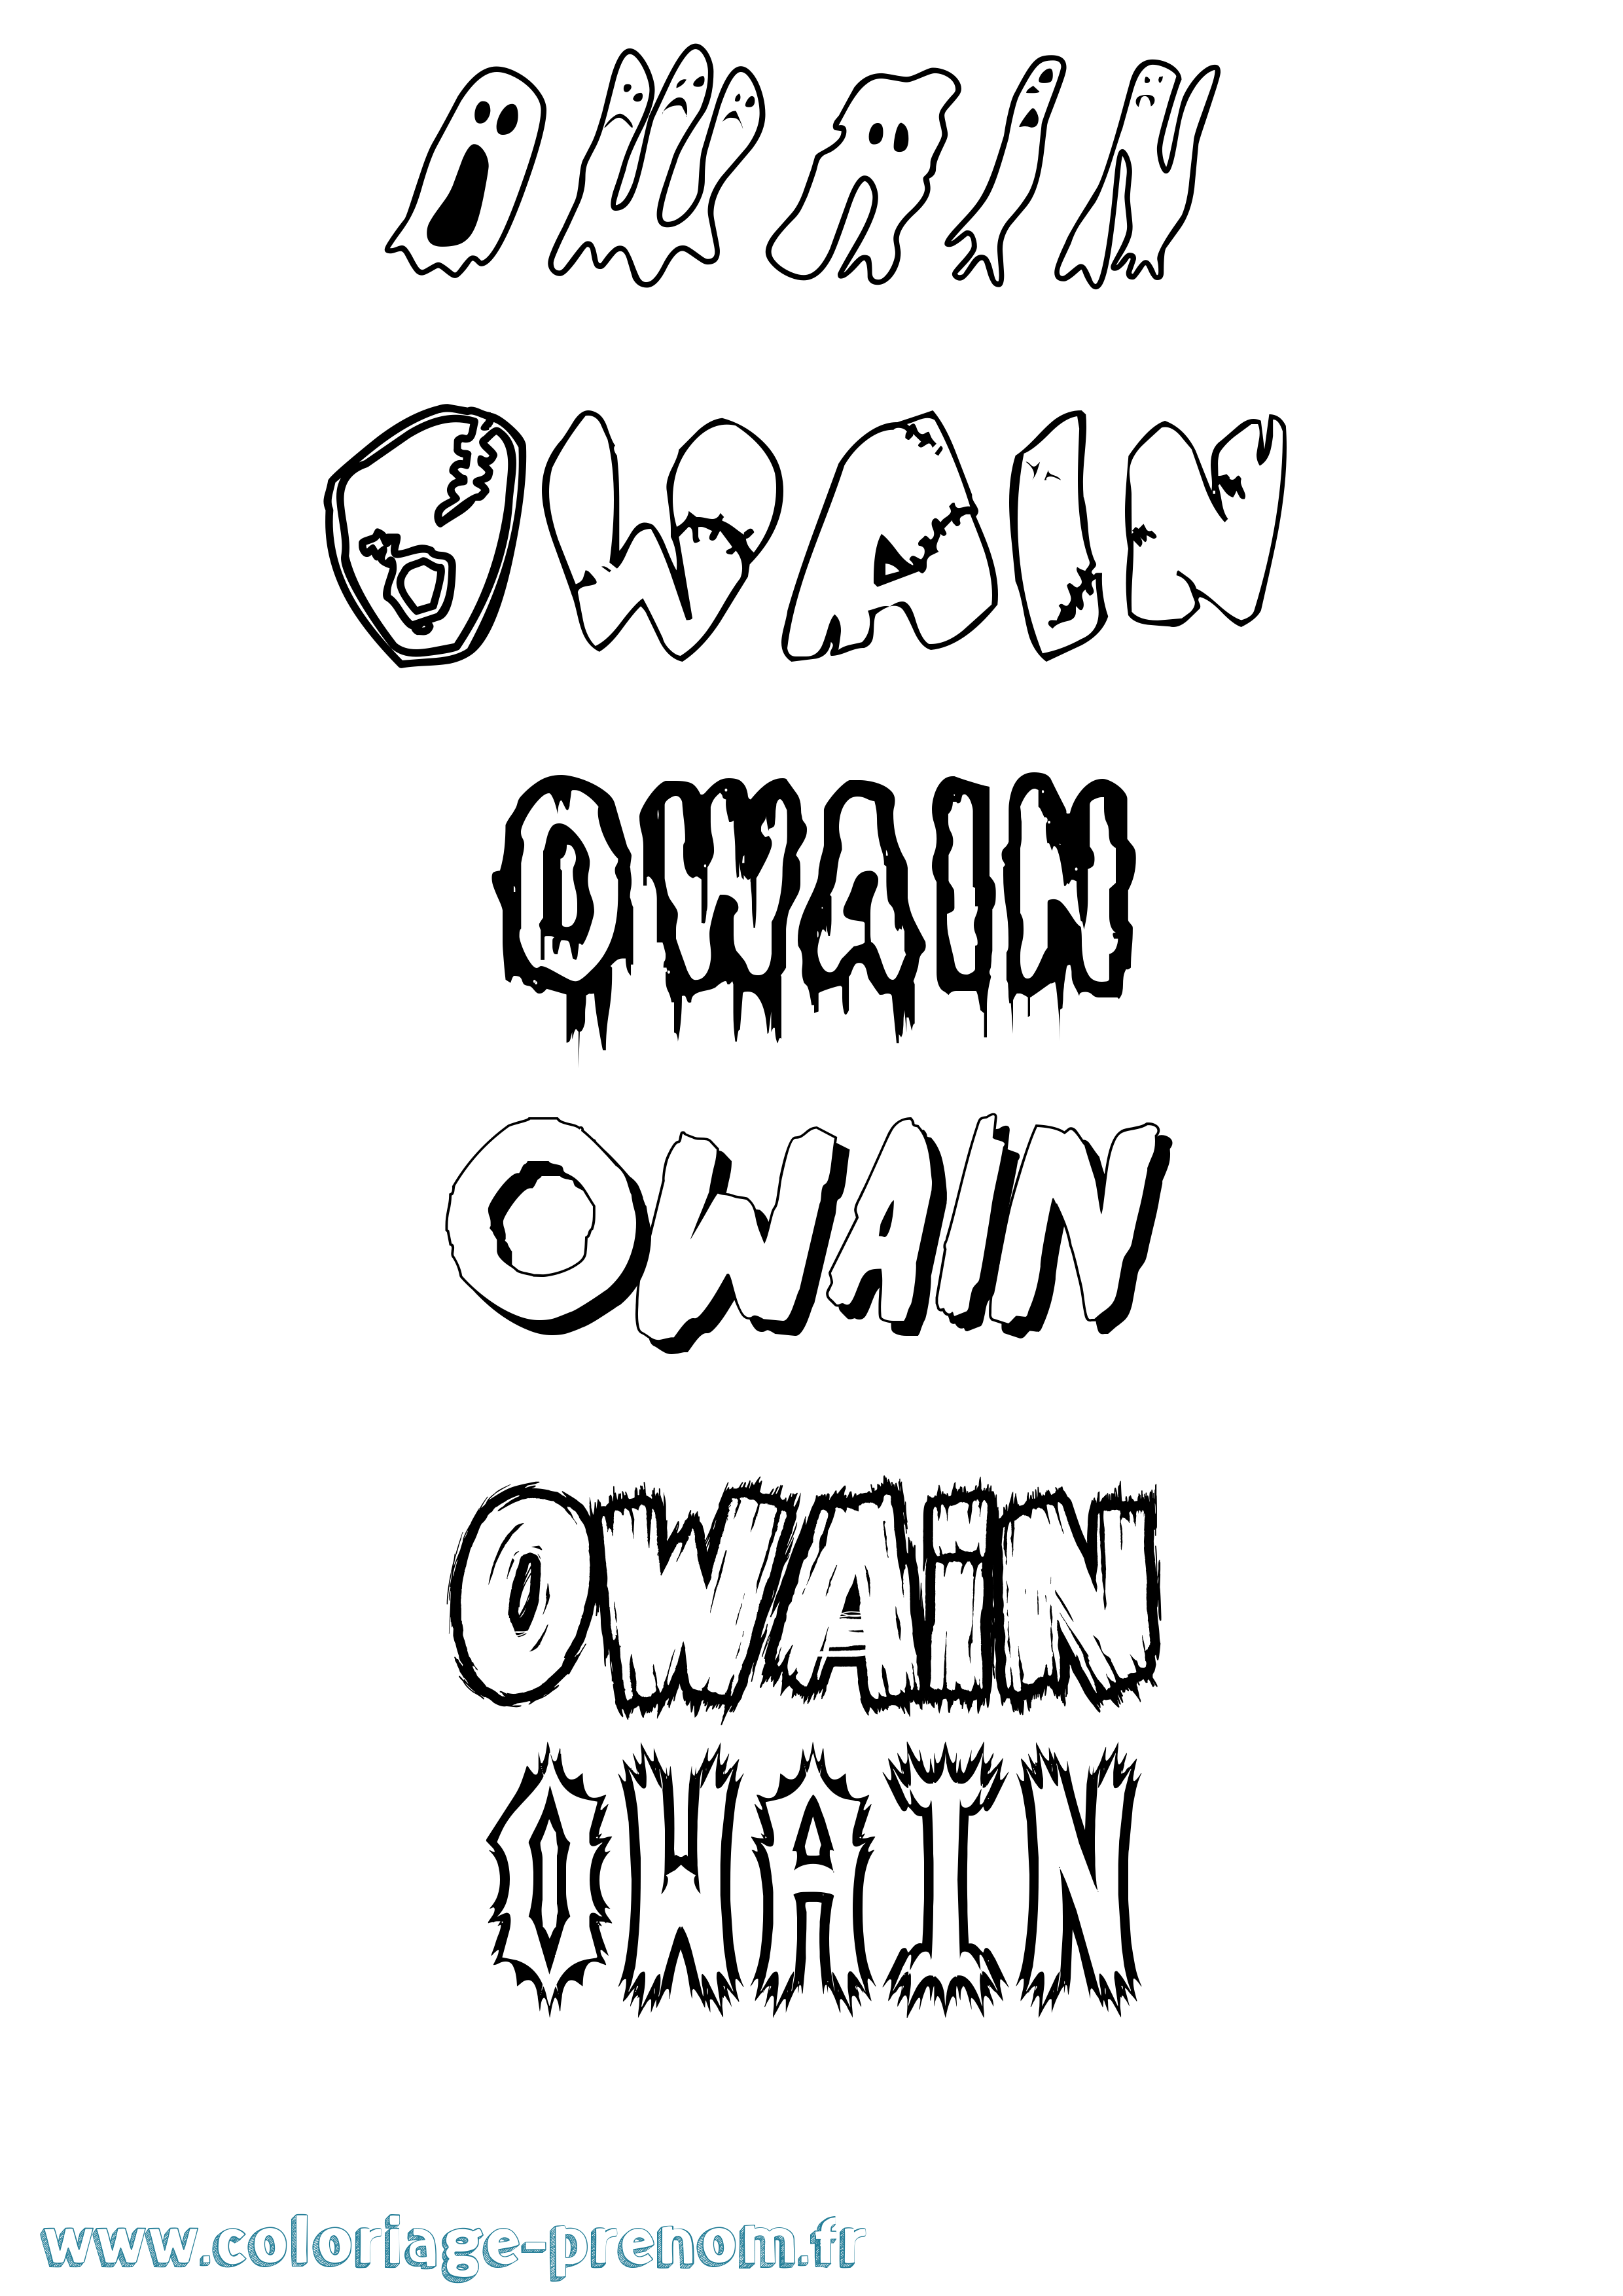 Coloriage prénom Owain Frisson